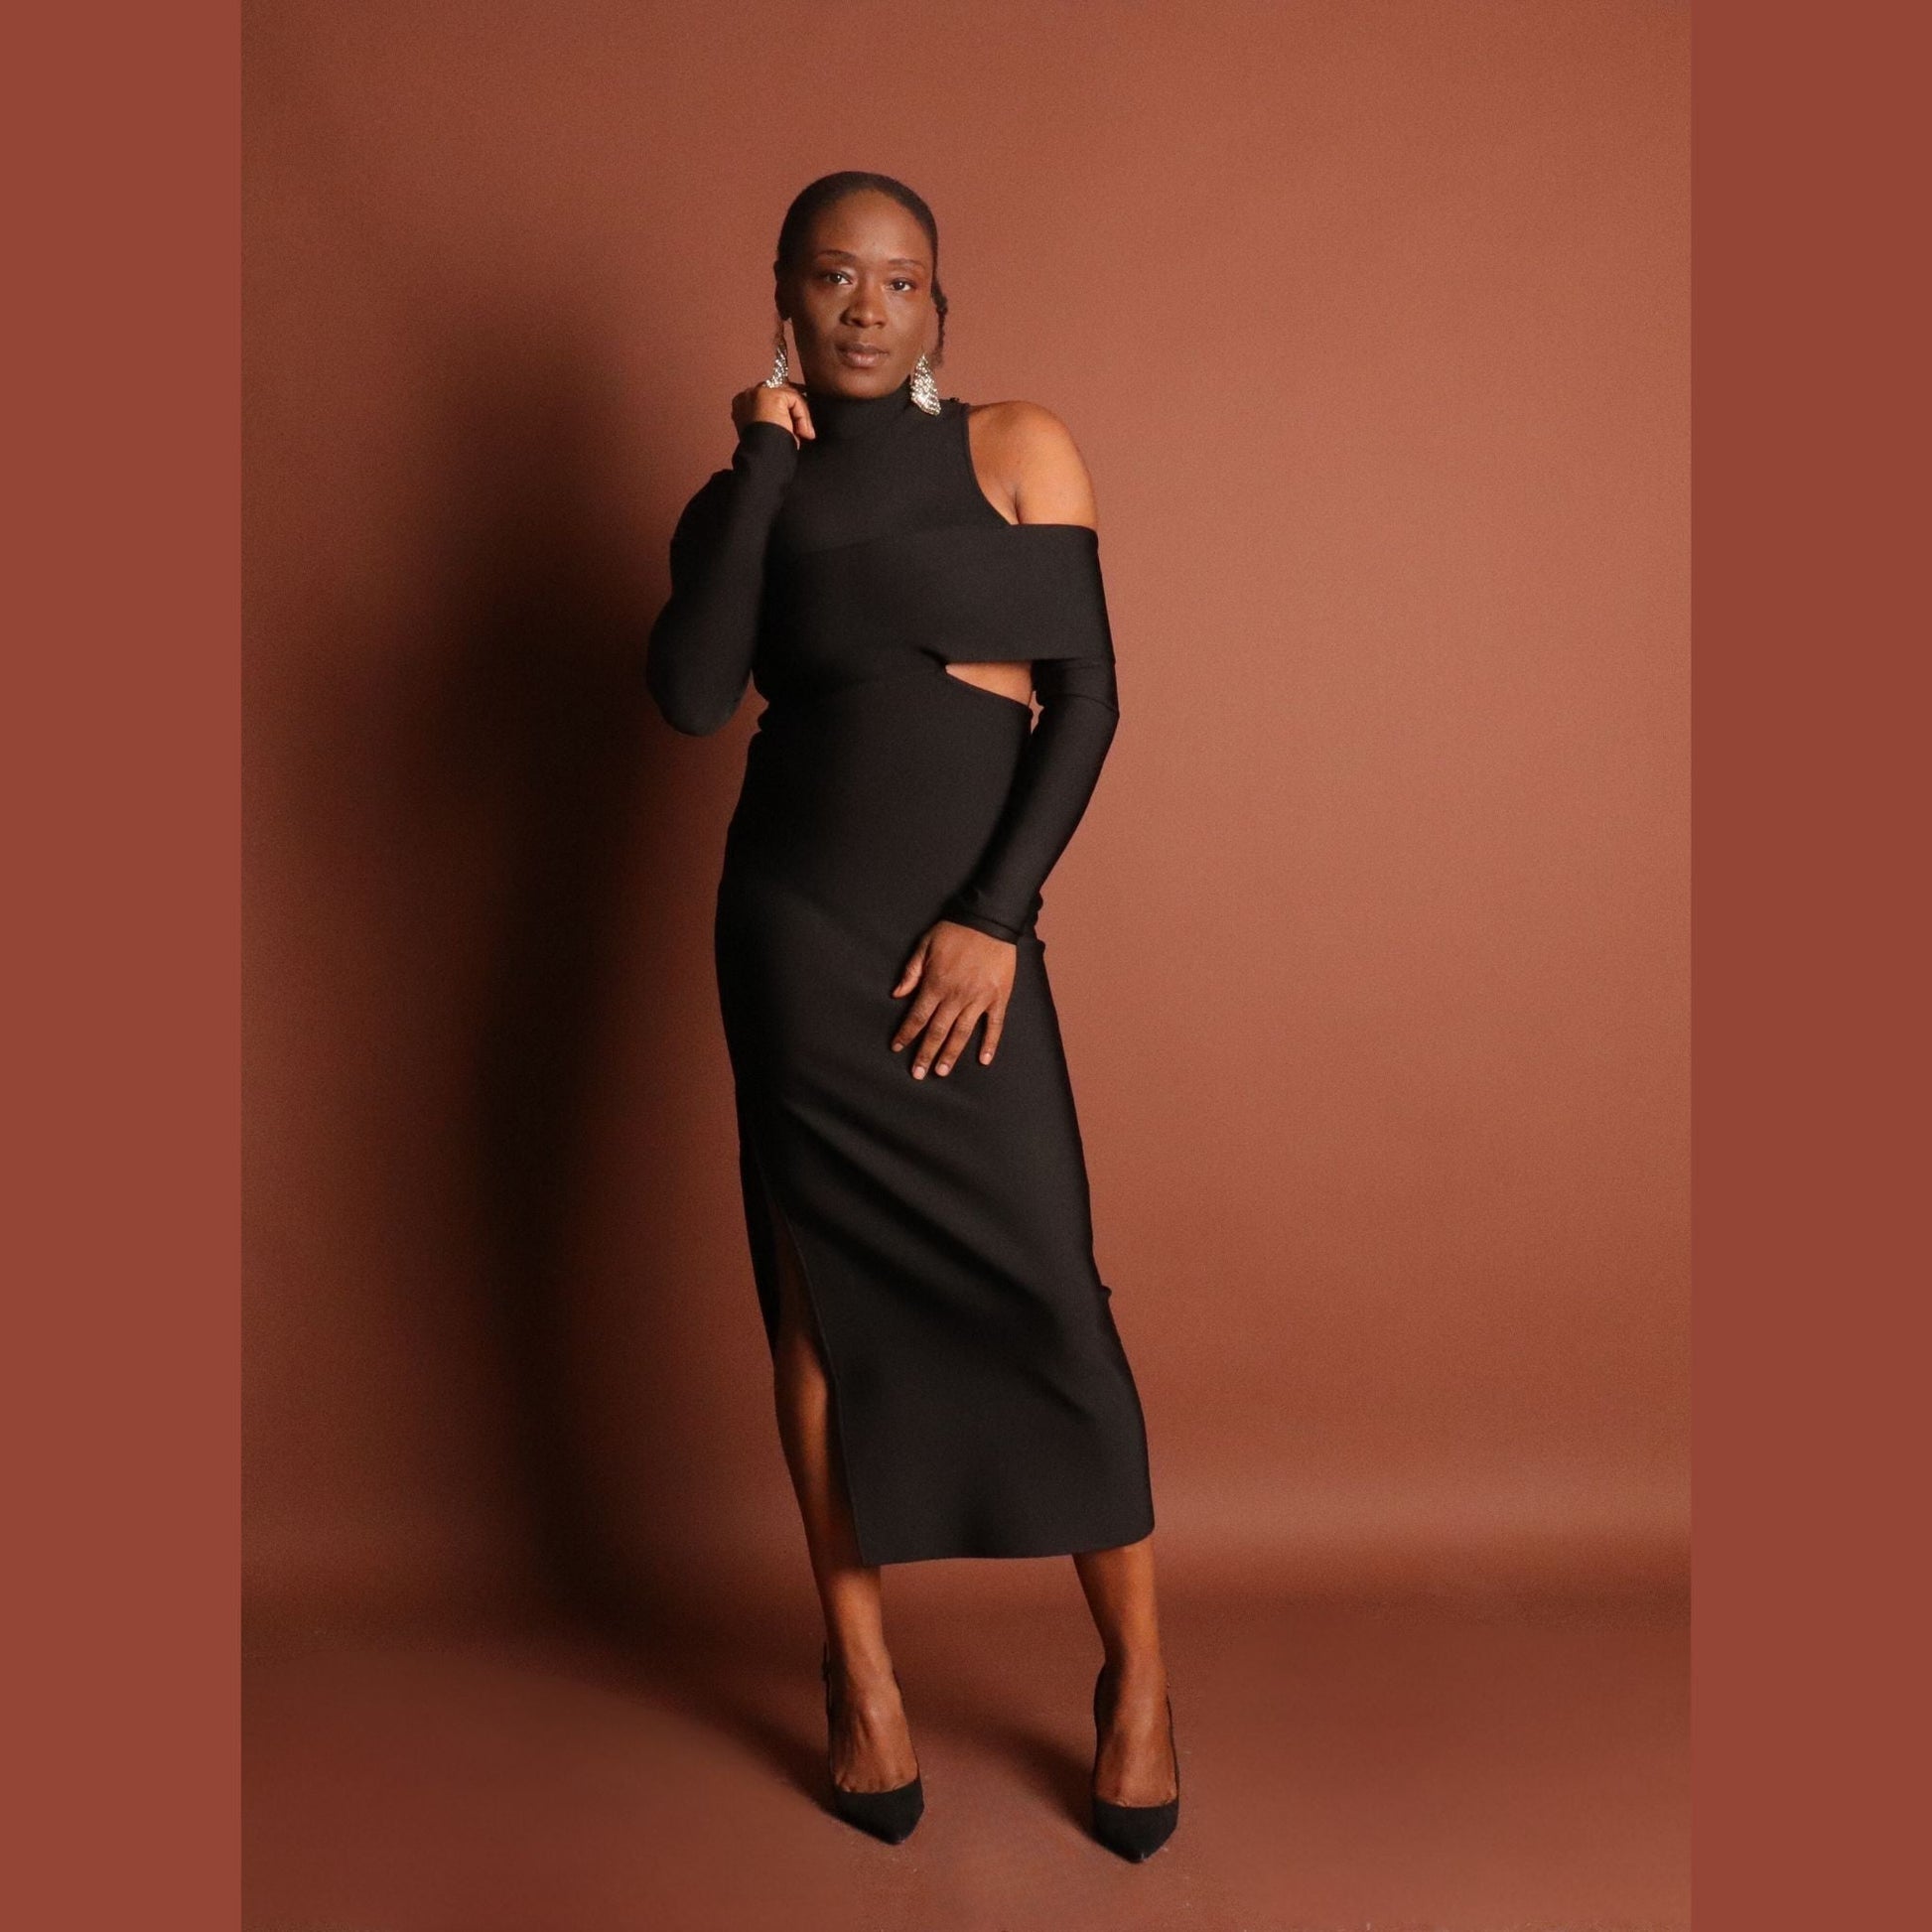 Noire Bandage Dress Dress Mo'Nique Couture Fashions 